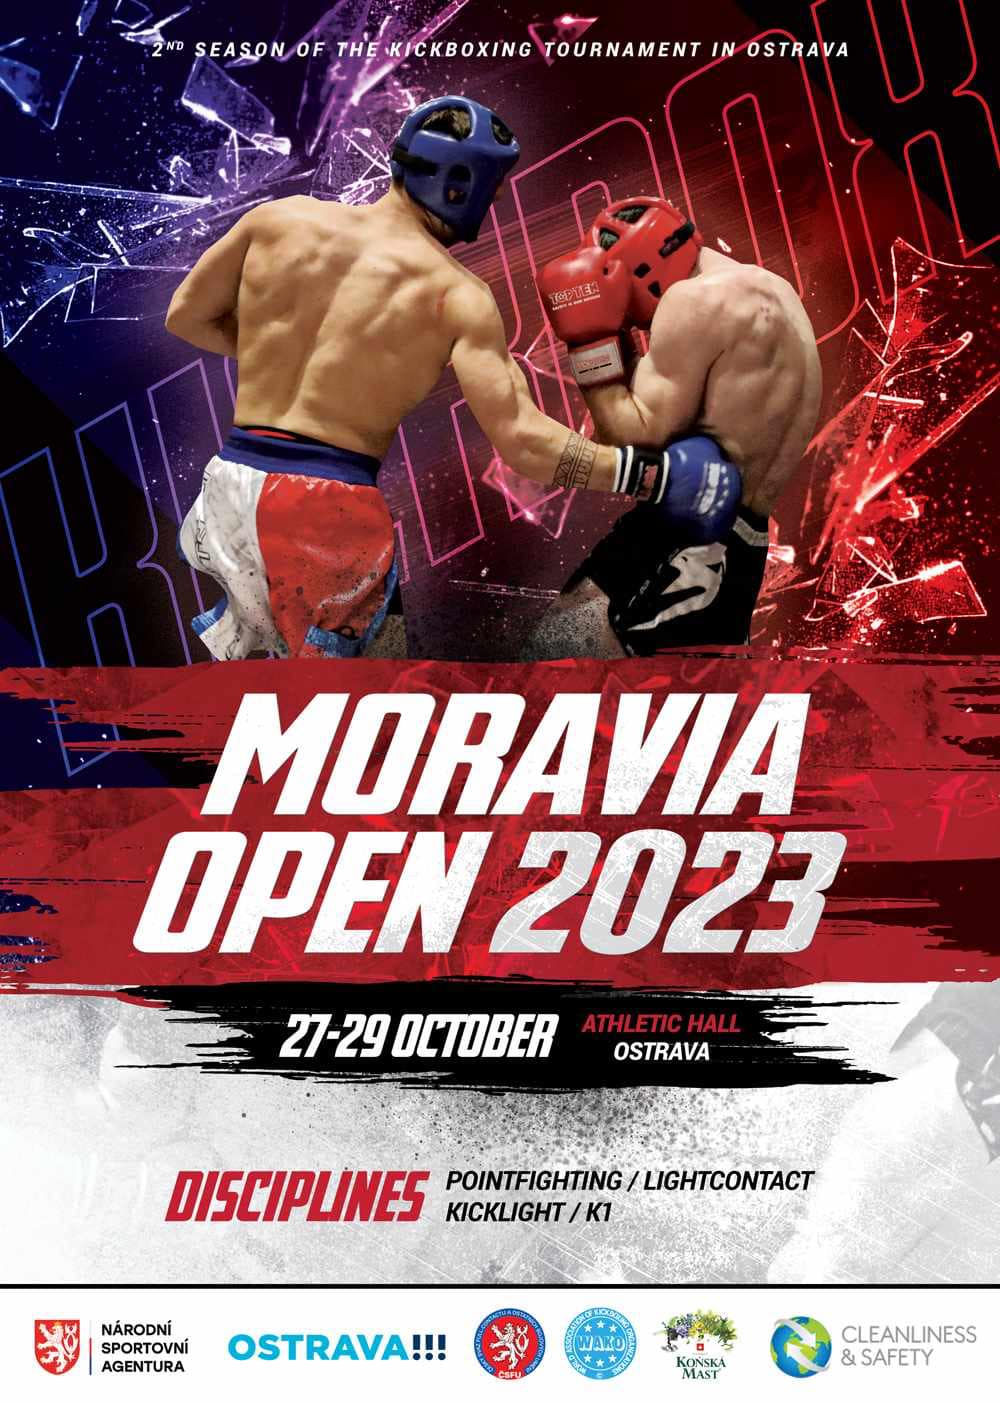 Moravia Open 2023 - KS Mistral kickboxing taekwondo będzin dąbrowa górnicza czeladź sosnowiec wojkowice katowice siemianowice śląskie śląsk.jpg